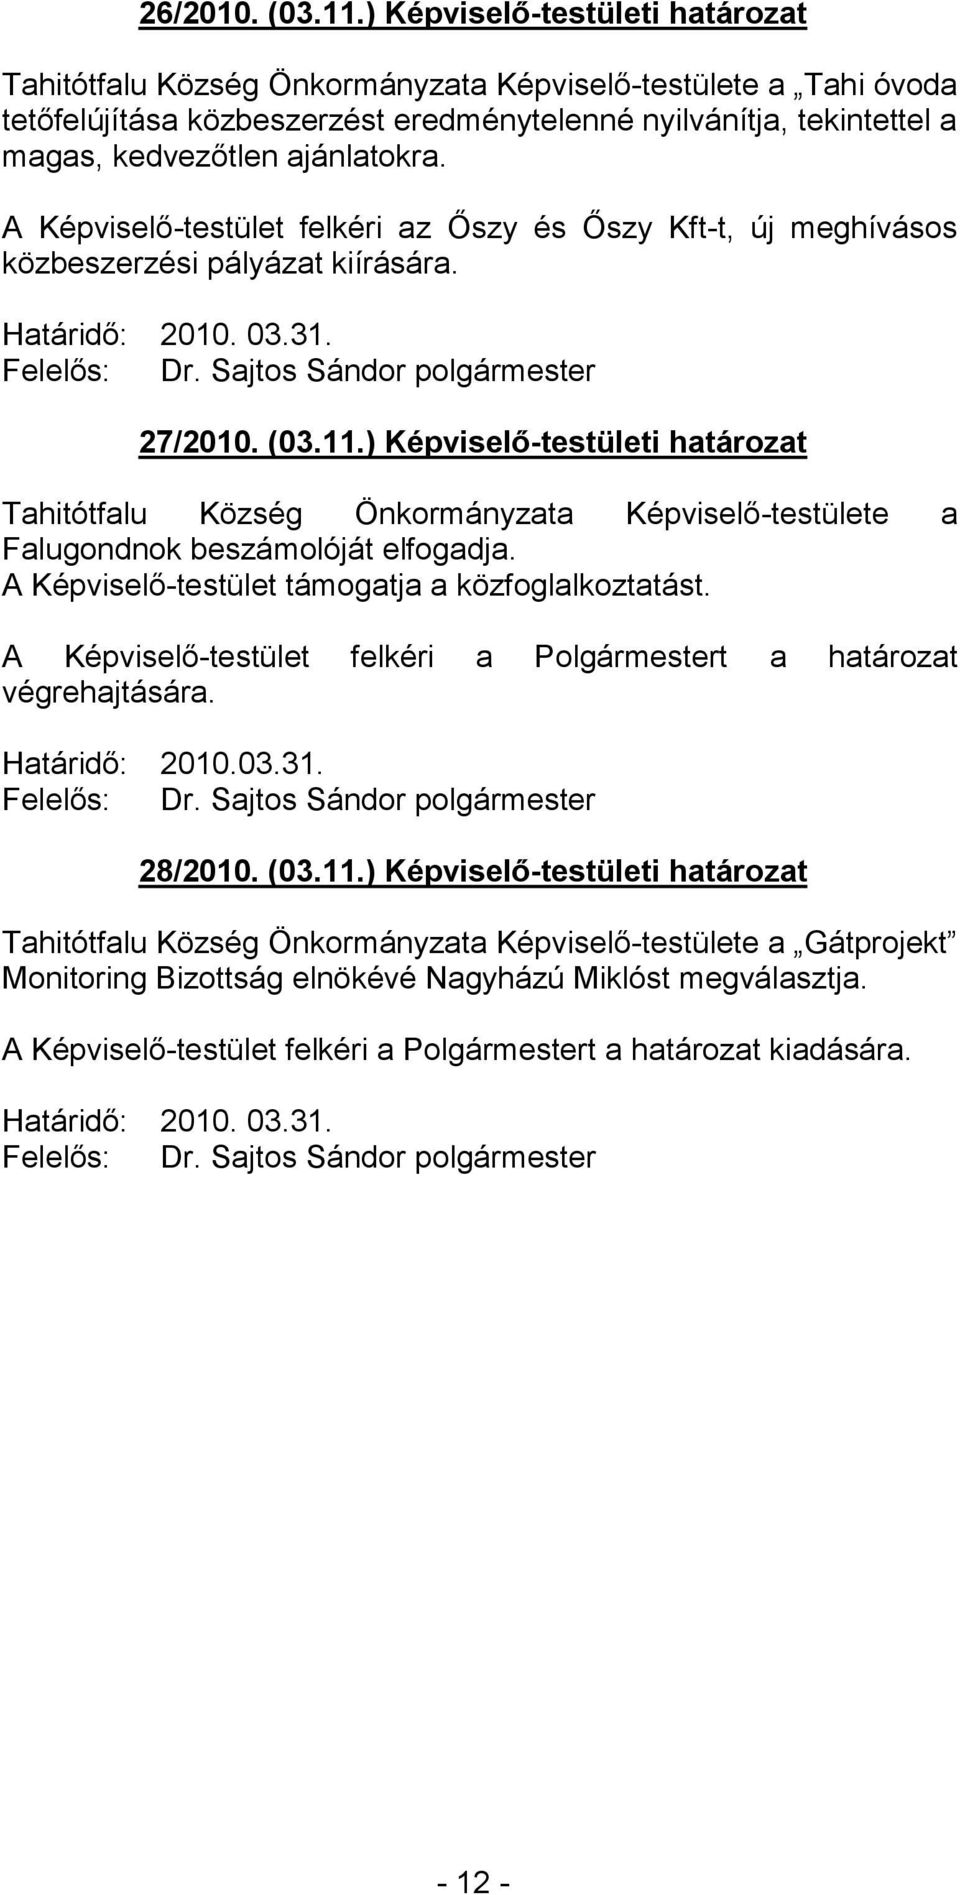 ajánlatokra. A Képviselő-testület felkéri az Őszy és Őszy Kft-t, új meghívásos közbeszerzési pályázat kiírására. Határidő: 2010. 03.31. 27/2010. (03.11.